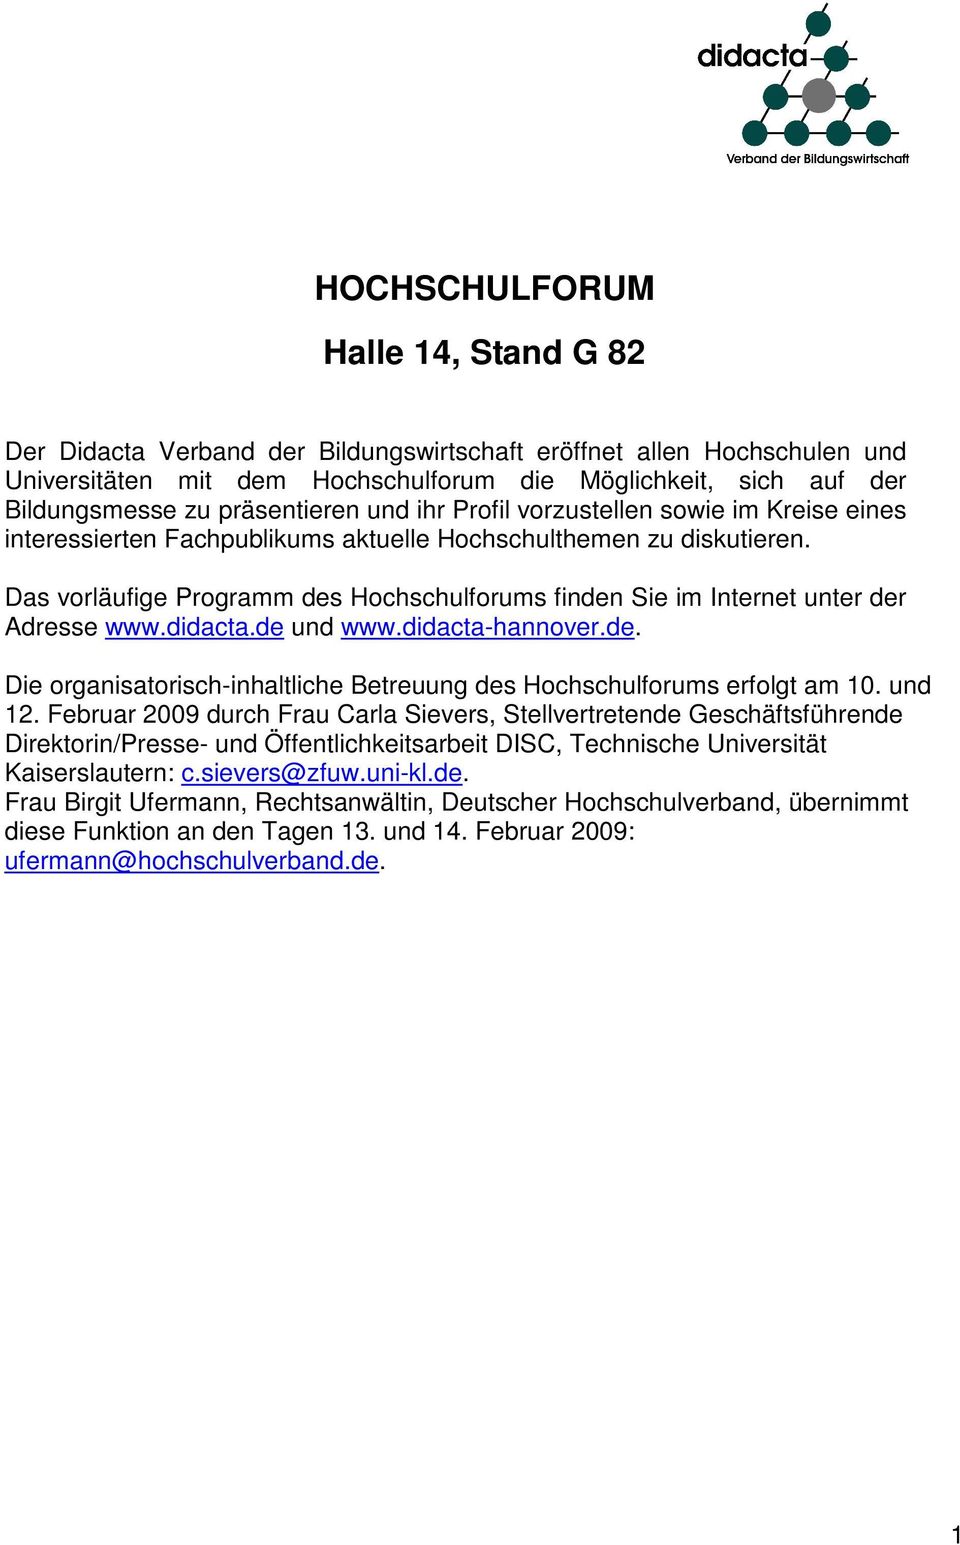 Das vorläufige Programm des Hochschulforums finden Sie im Internet unter der Adresse www.didacta.de und www.didacta-hannover.de. Die organisatorisch-inhaltliche Betreuung des Hochschulforums erfolgt am 10.